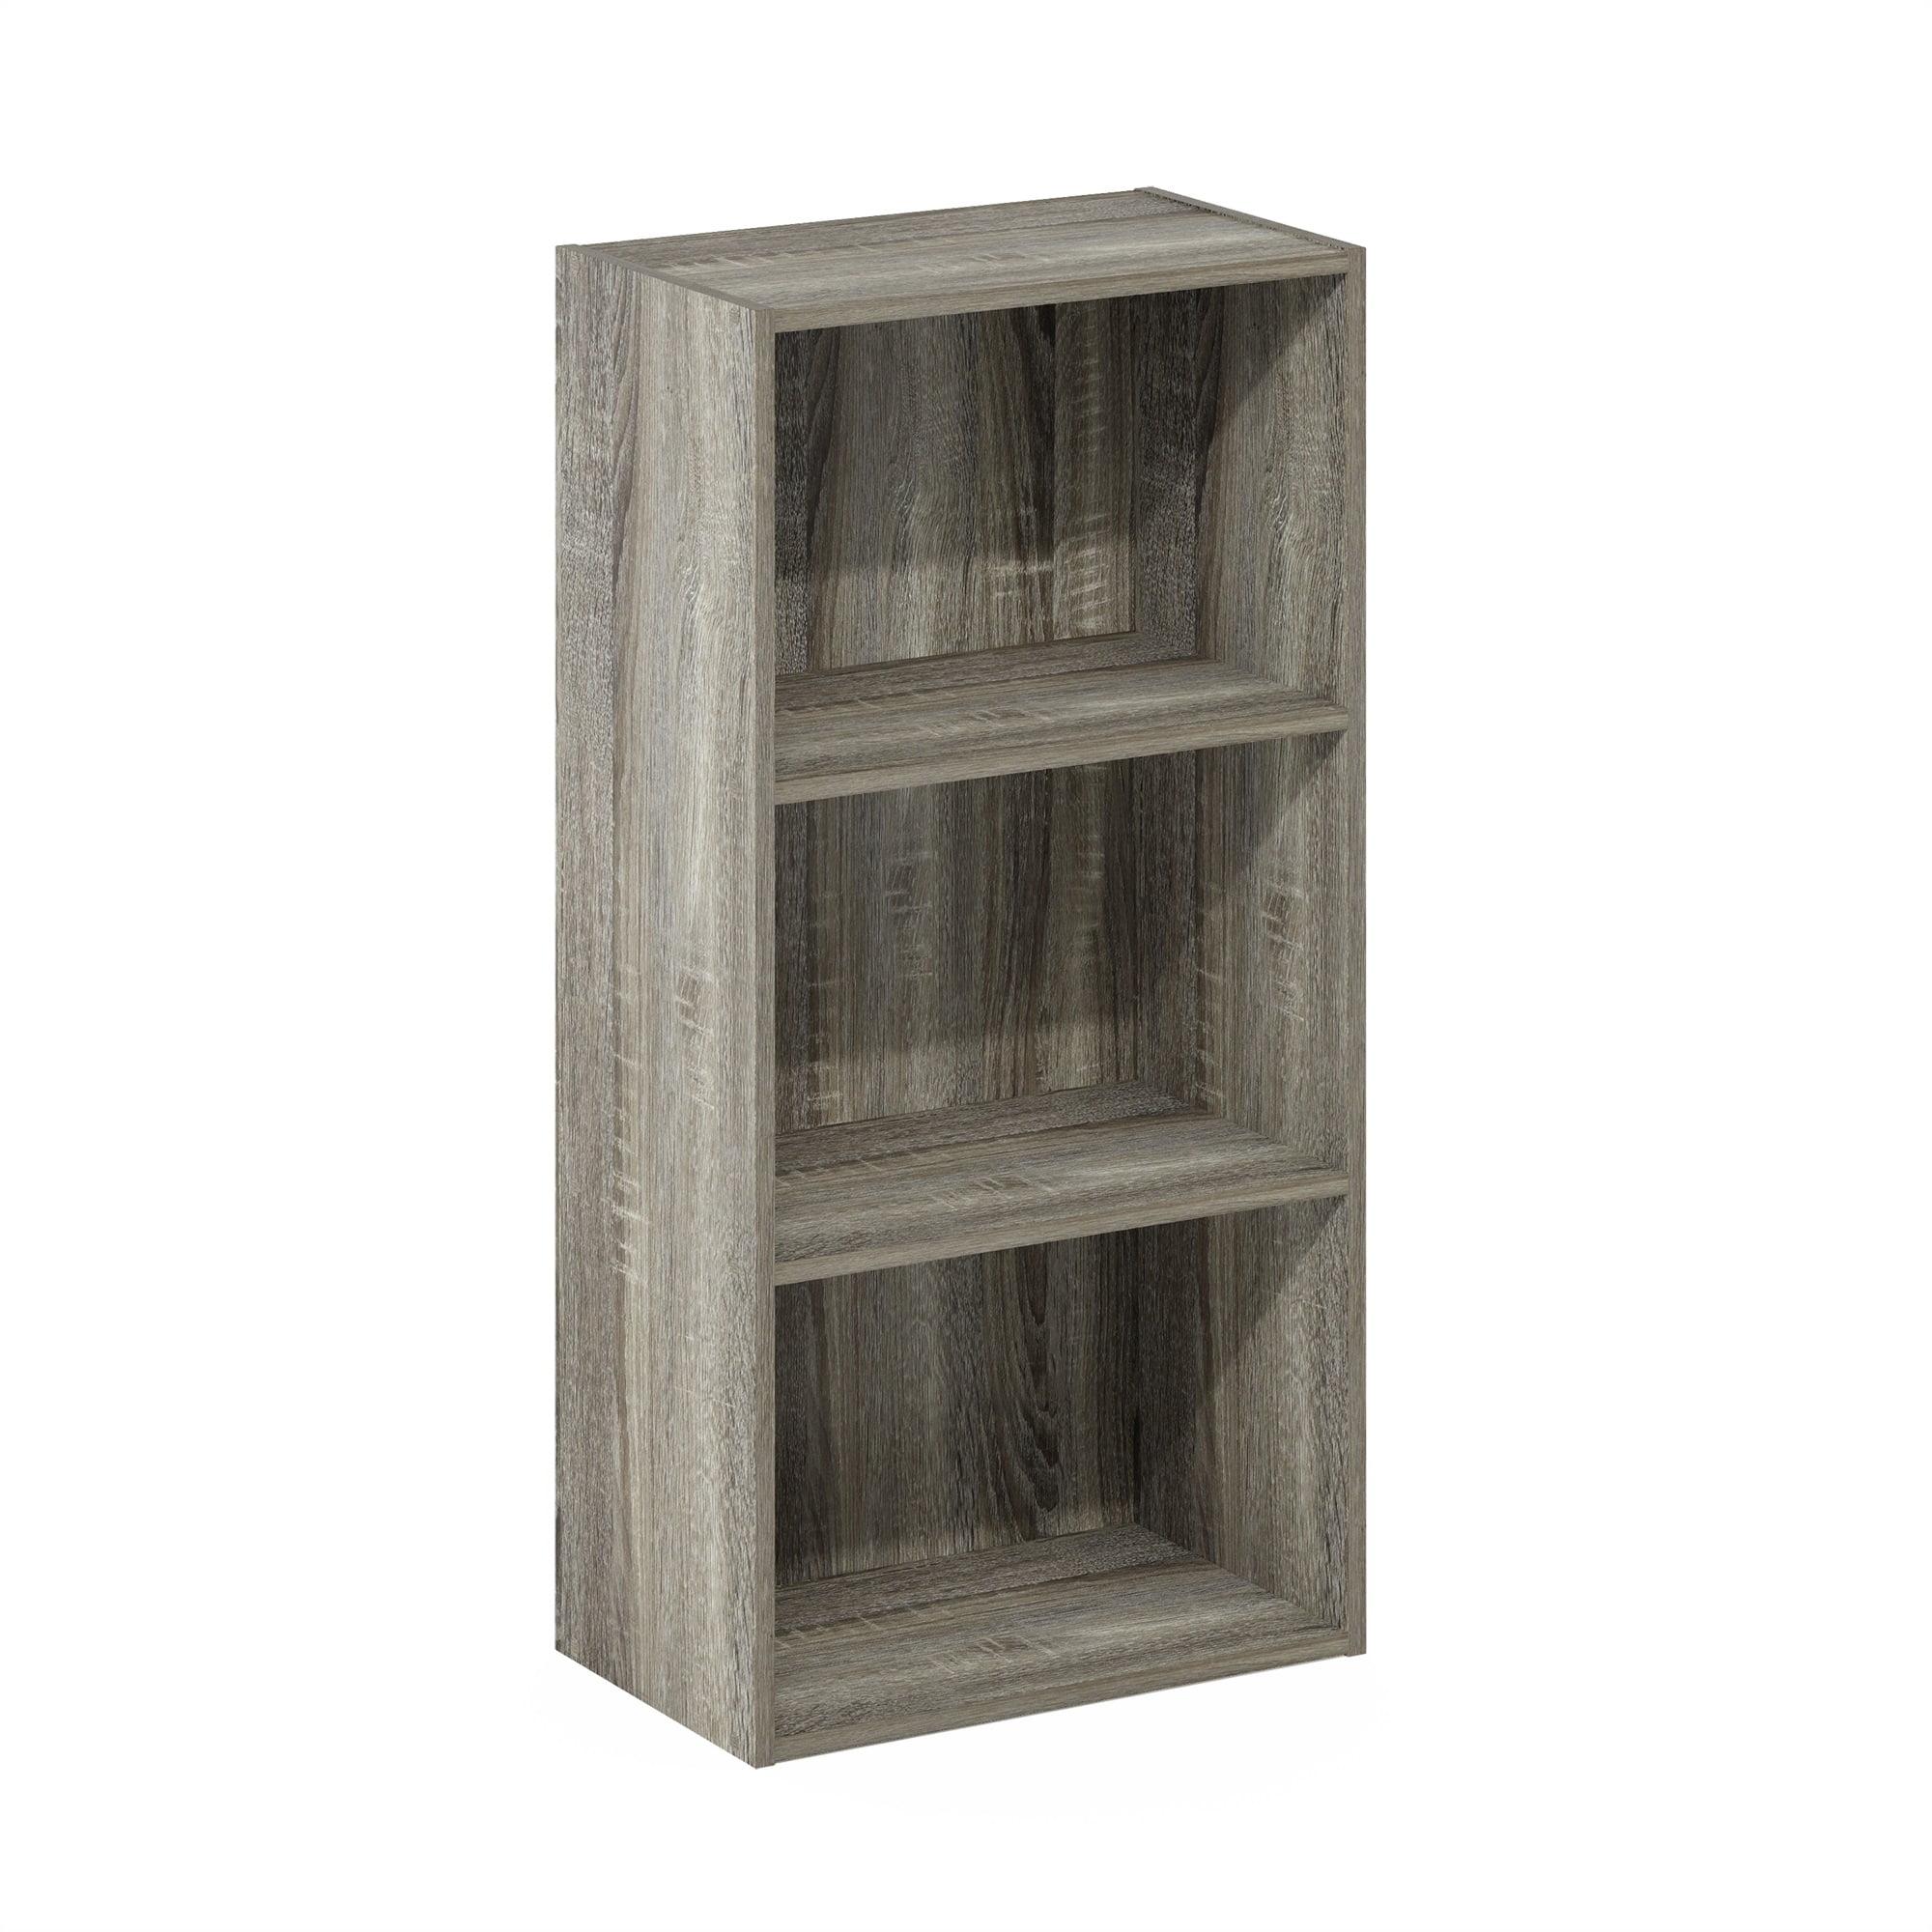 Contemporary French Oak White 3-Tier Open Shelf Bookcase